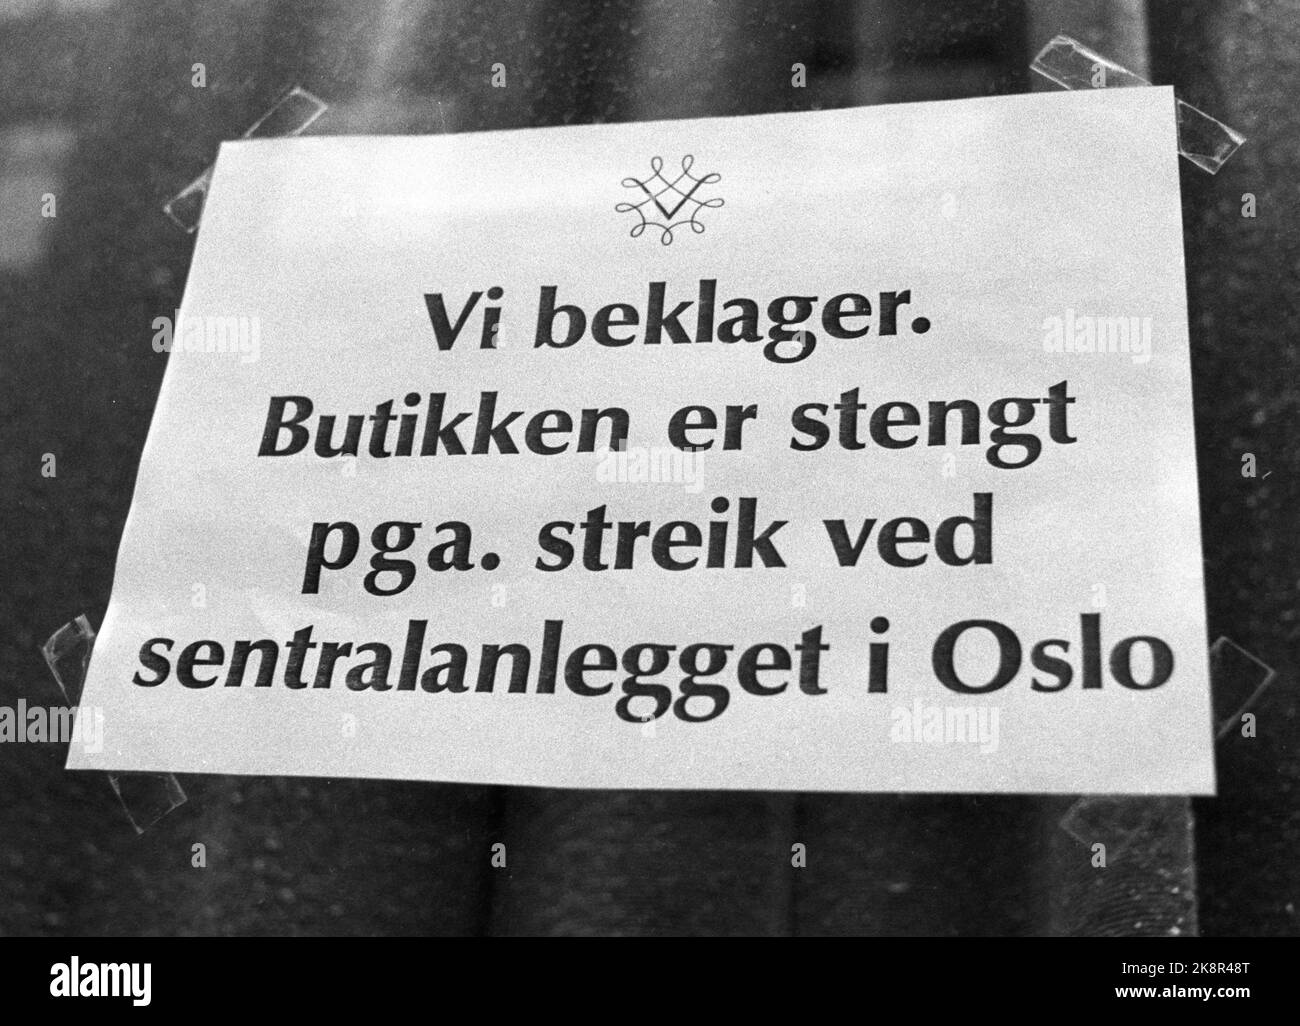 Oslo Noviembre 1982. Huelga de monopolio del vino. La huelga más prolongada del país en la posguerra duró 14 semanas. Aquí las señales en la ruta en el Vinmonopolet 'Lo sentimos. El cartel de la ruta está escrito' Lo sentimos. La tienda está cerrada debido a. Huelga en la central de Oslo ”. Foto: Henrik Laurvik / NTB Foto de stock